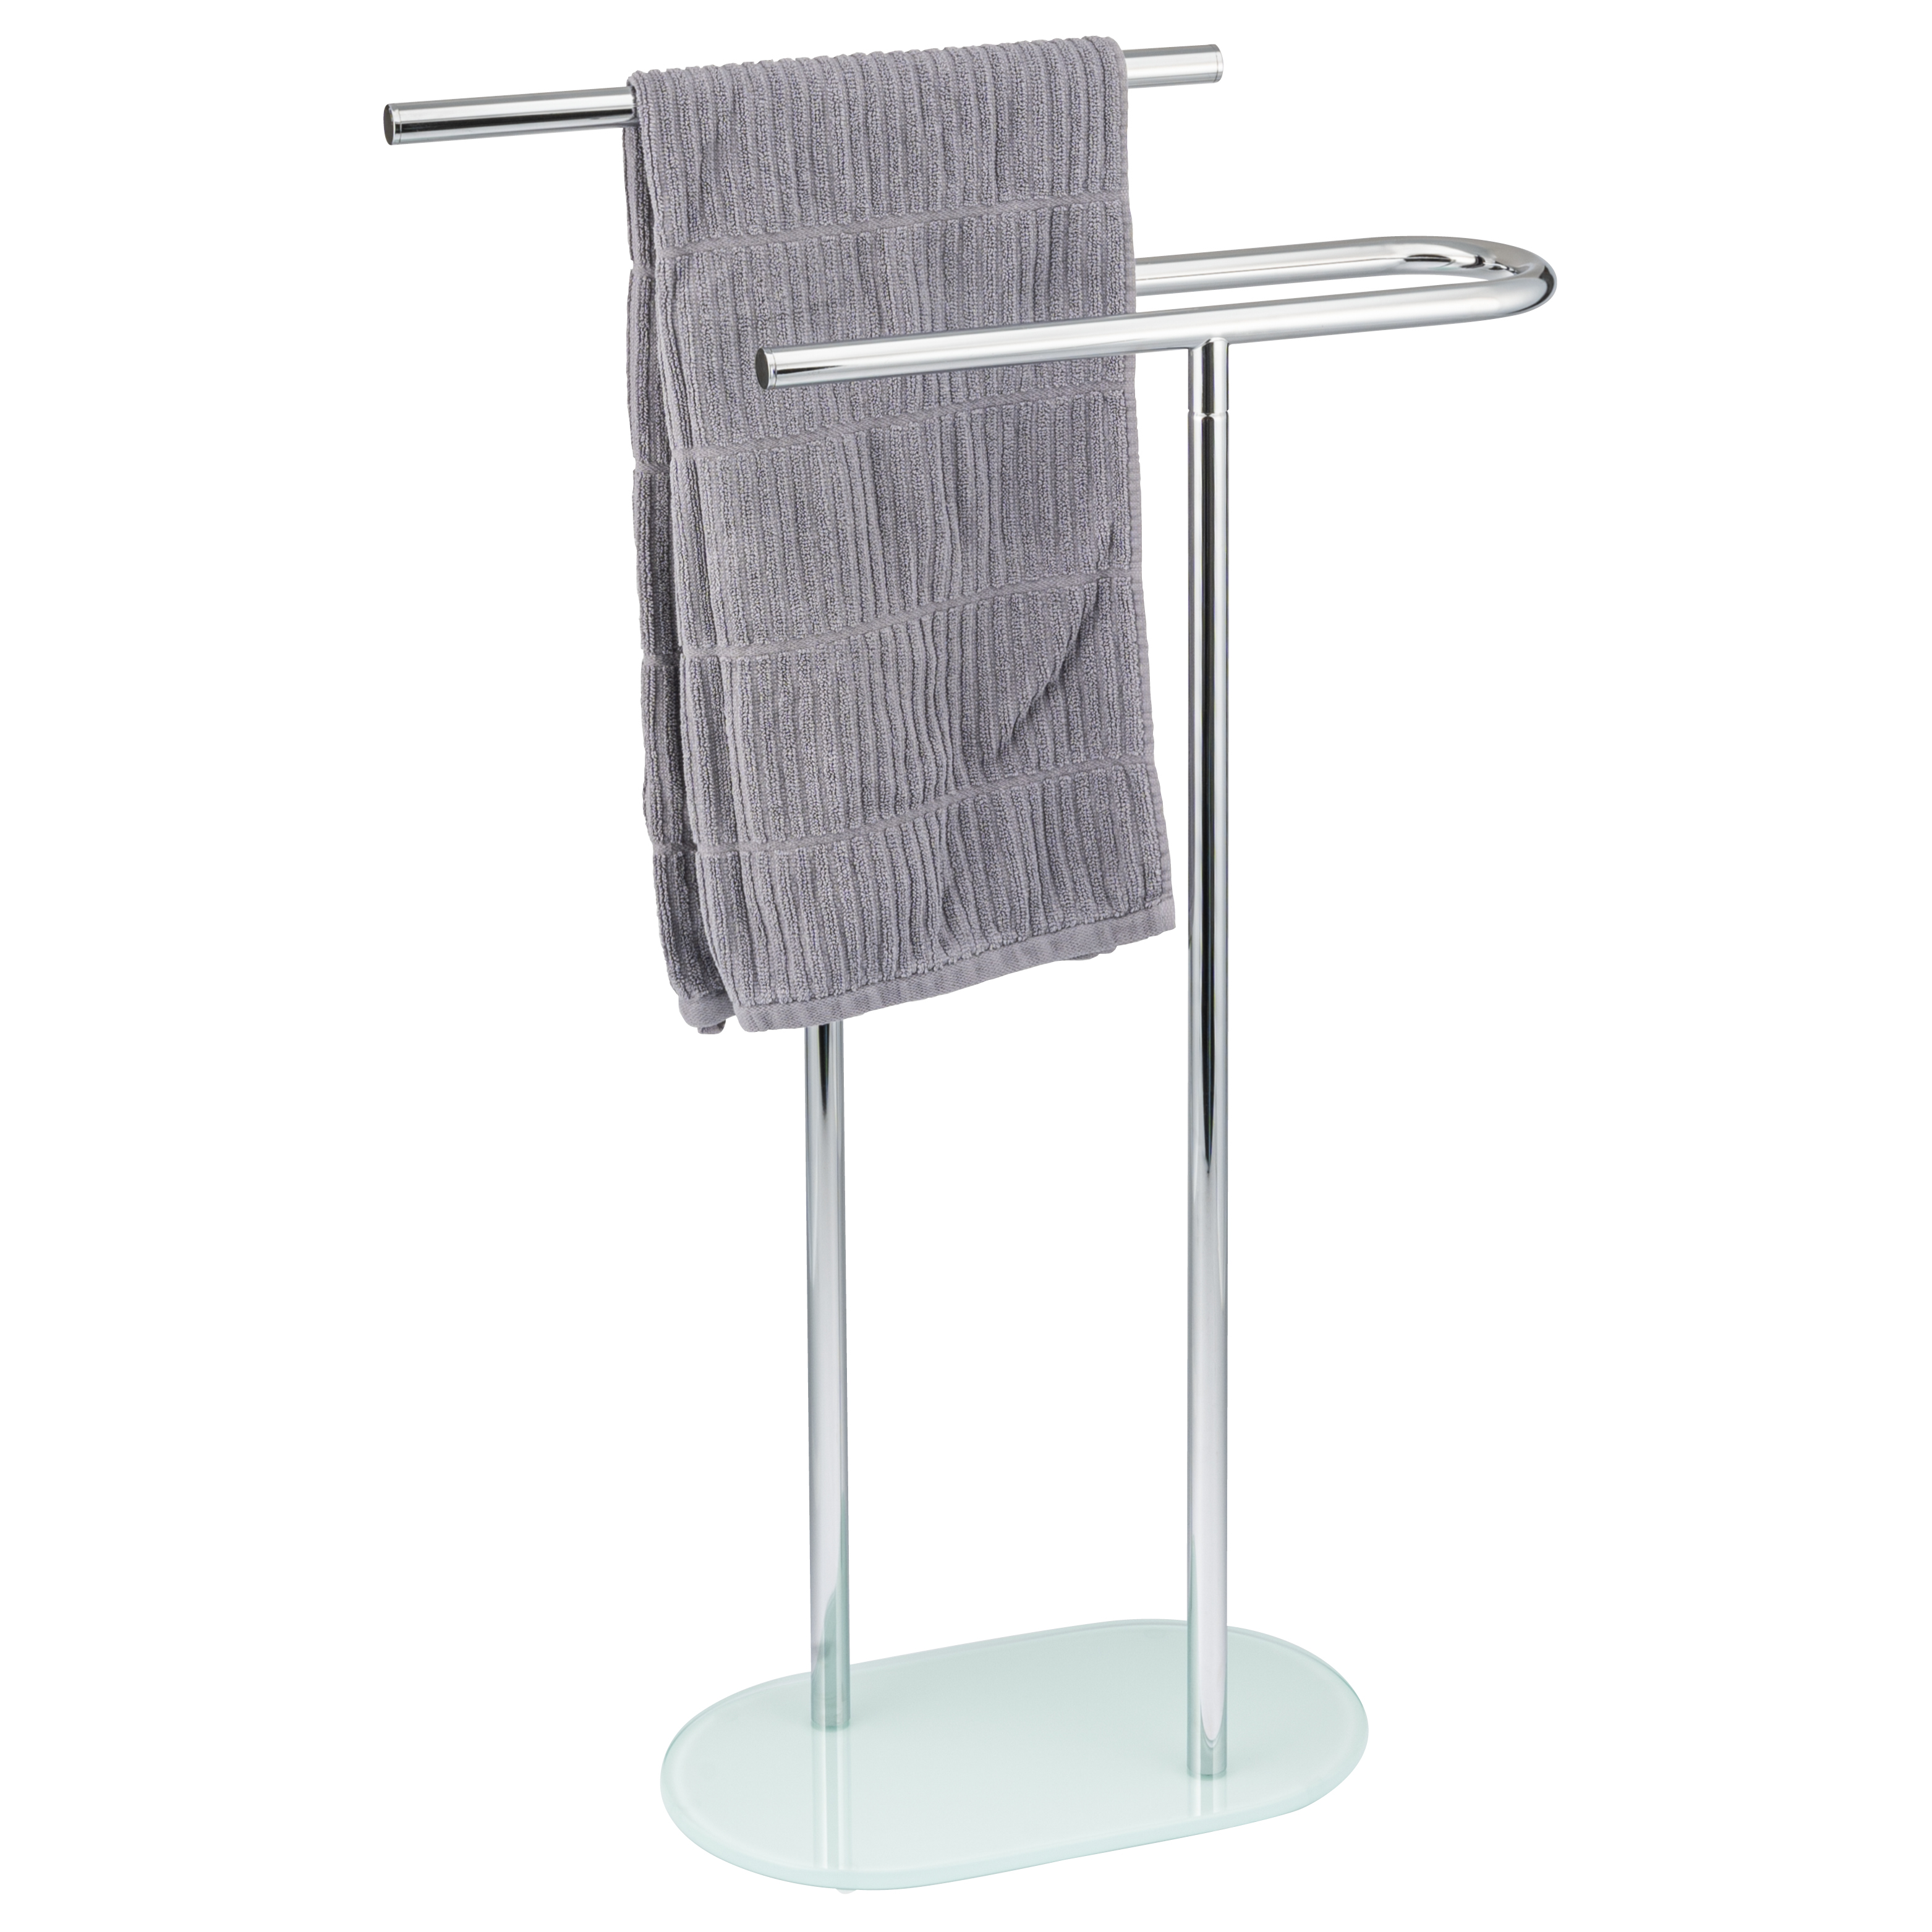 Stand-Handtuchhalter freistehend, 2 Stangen, mit Glasboden, Handtuchständer, weiß